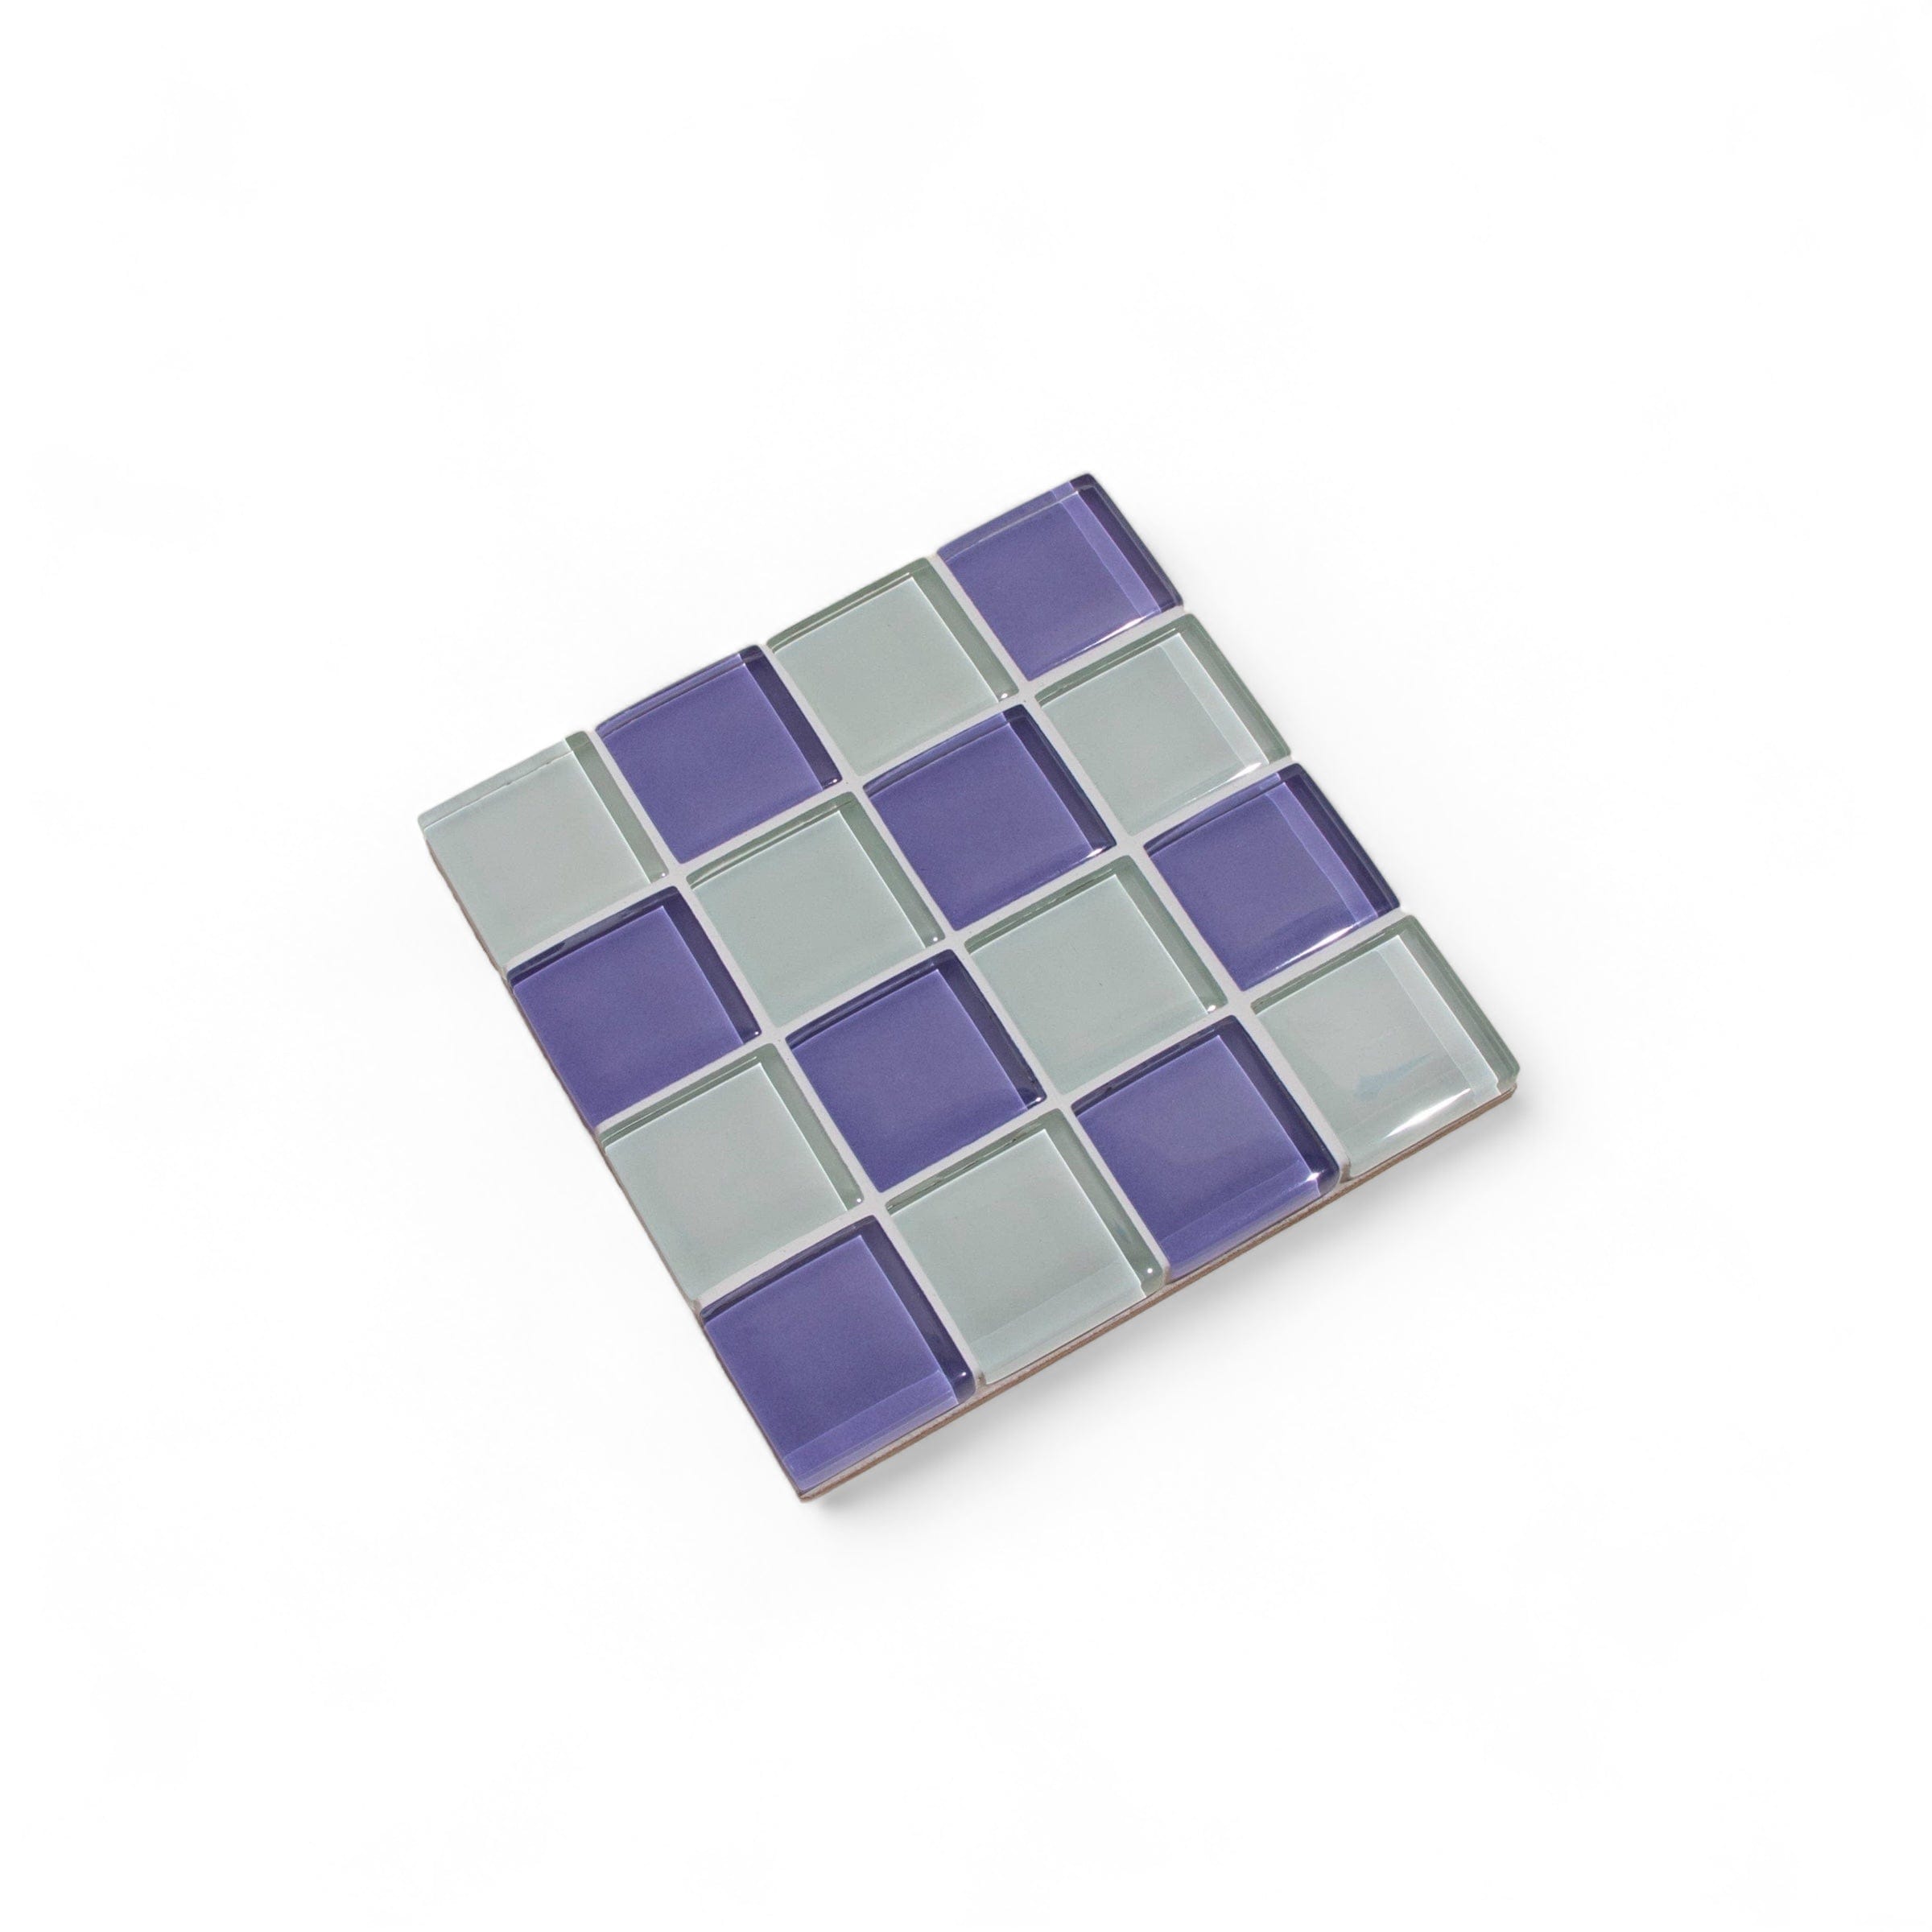 Glass Tile Coaster - Lavender Latte by Subtle Art Studios